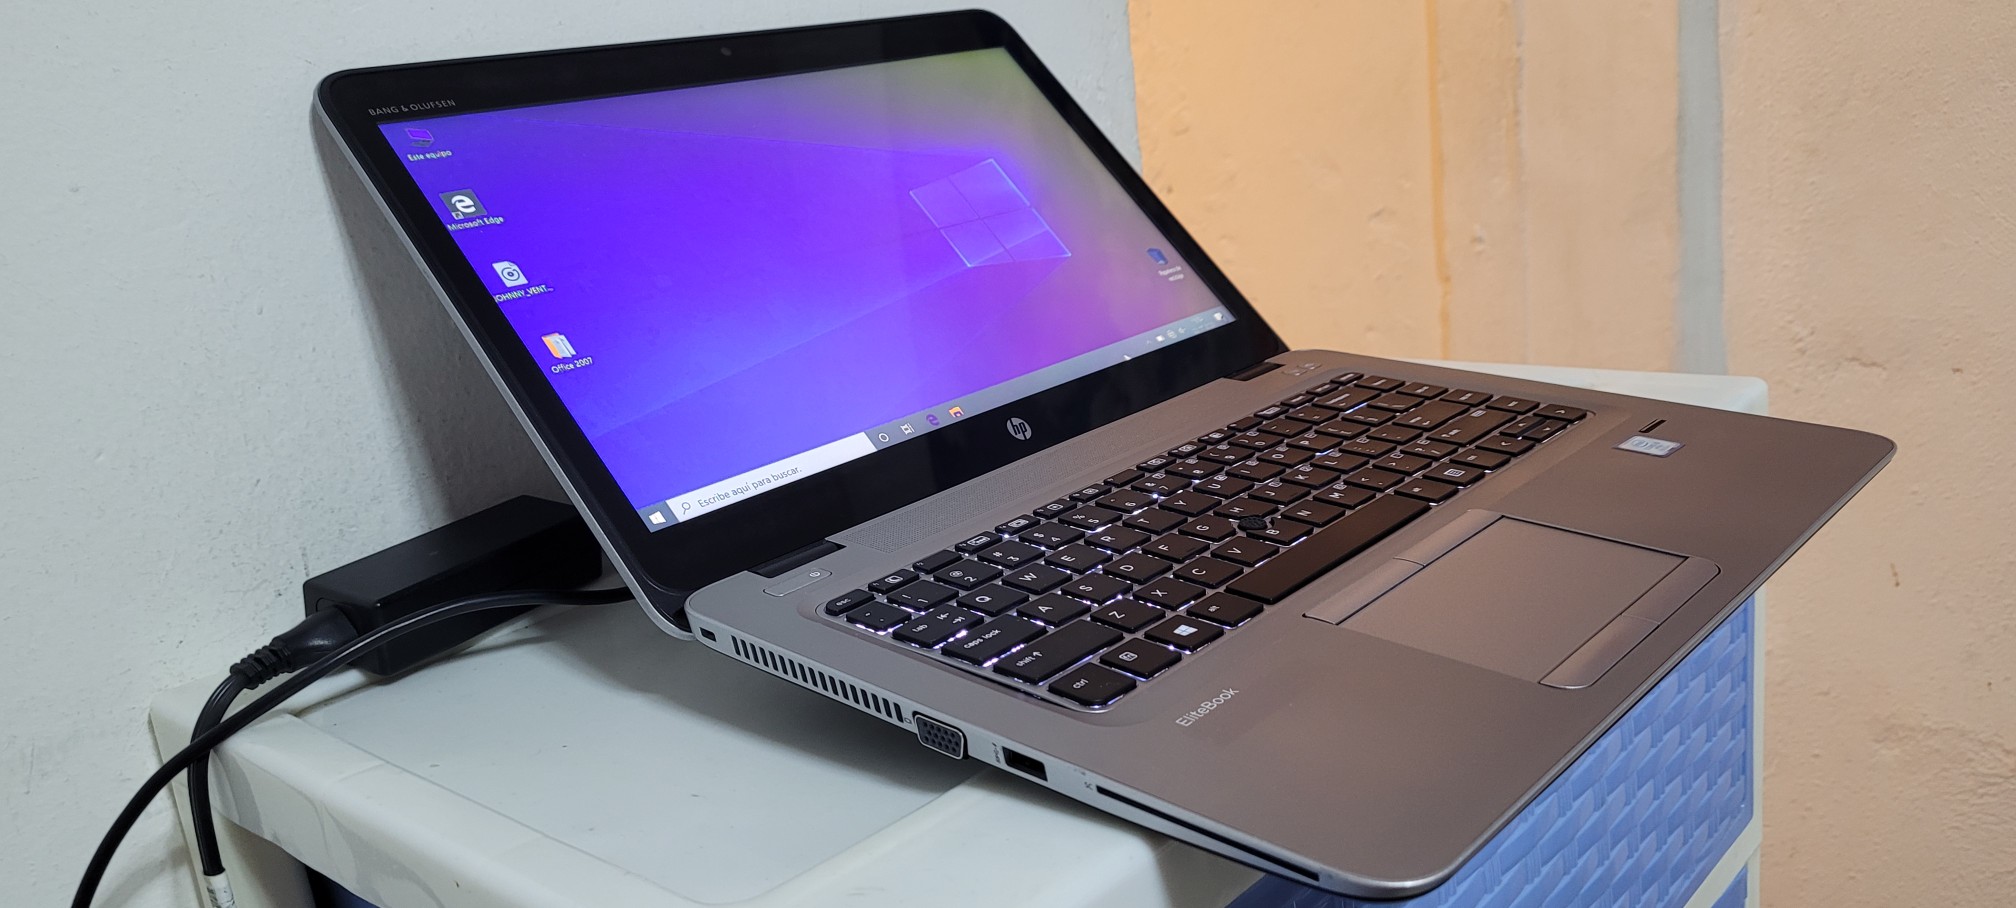 computadoras y laptops - Laptop hp Touch 14 Pulg Core i5 7ma Gen Ram 8gb ddr4 Disco 500gb bluetoth 1